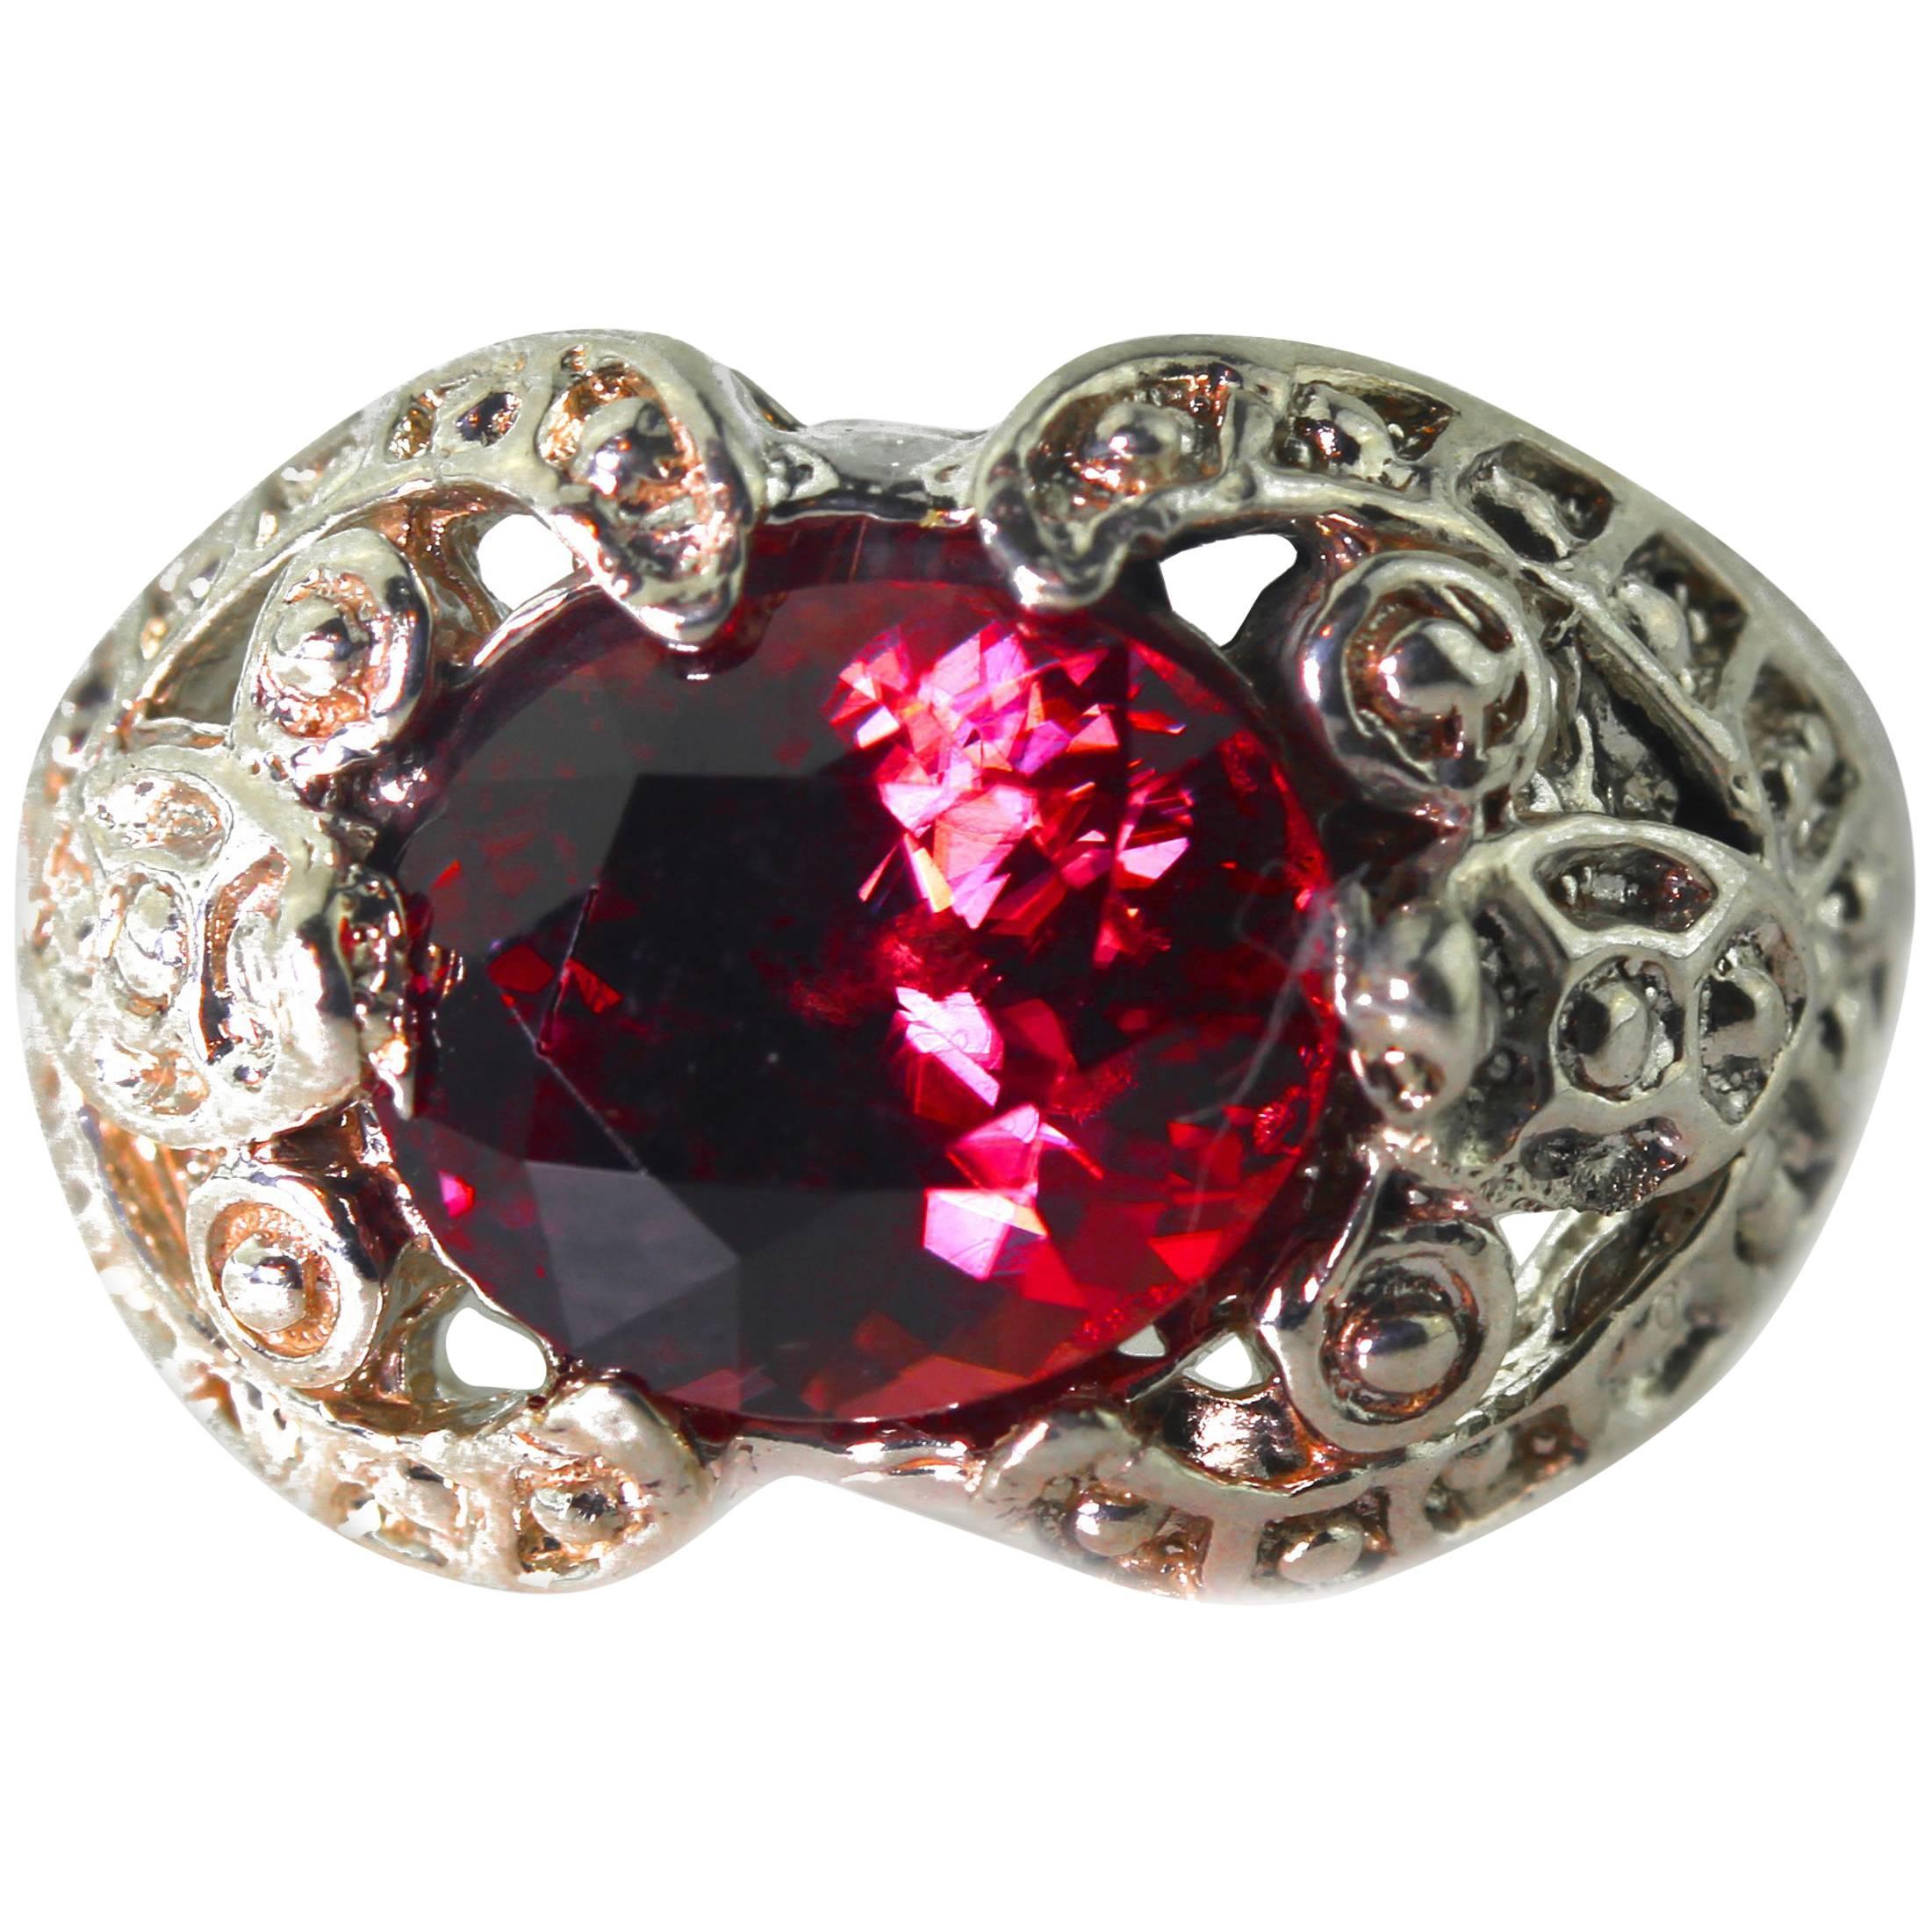 Brillant glitzernde seltene natürliche reflektierende rote Zirkon (6,4 Karat - 10,9 mm x 8,9 mm)) eingebettet elegant in einem einzigartigen handgefertigten schönen Sterling Silber Ring Größe 7 (sizable). Dies gilt sowohl für Tages- als auch für